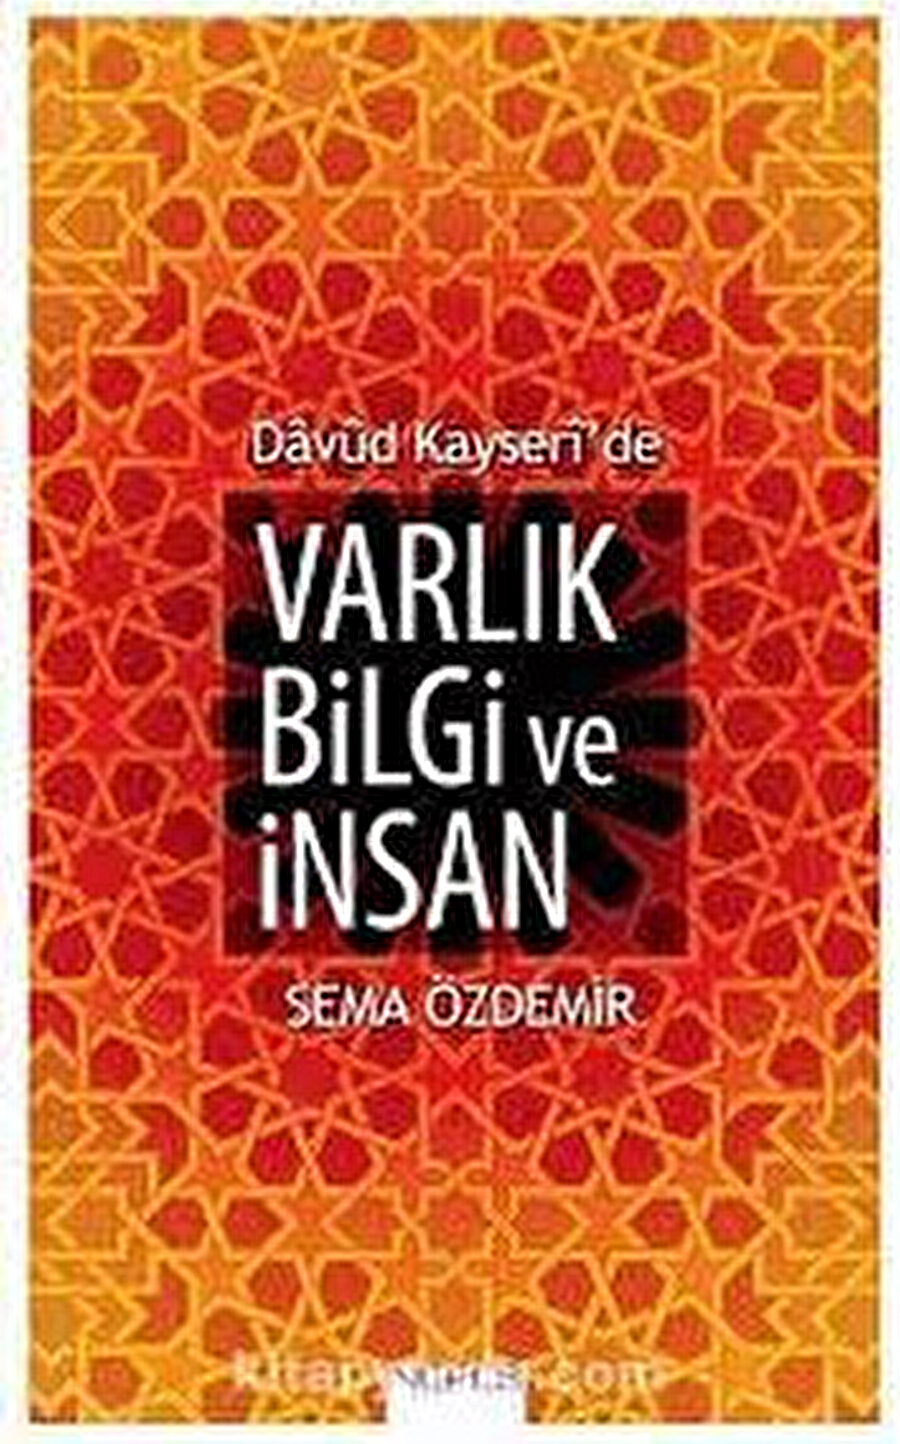 Davud Kayserî'de Varlık Bilgi ve İnsan, Sema Özdemir, Nefes, 2014